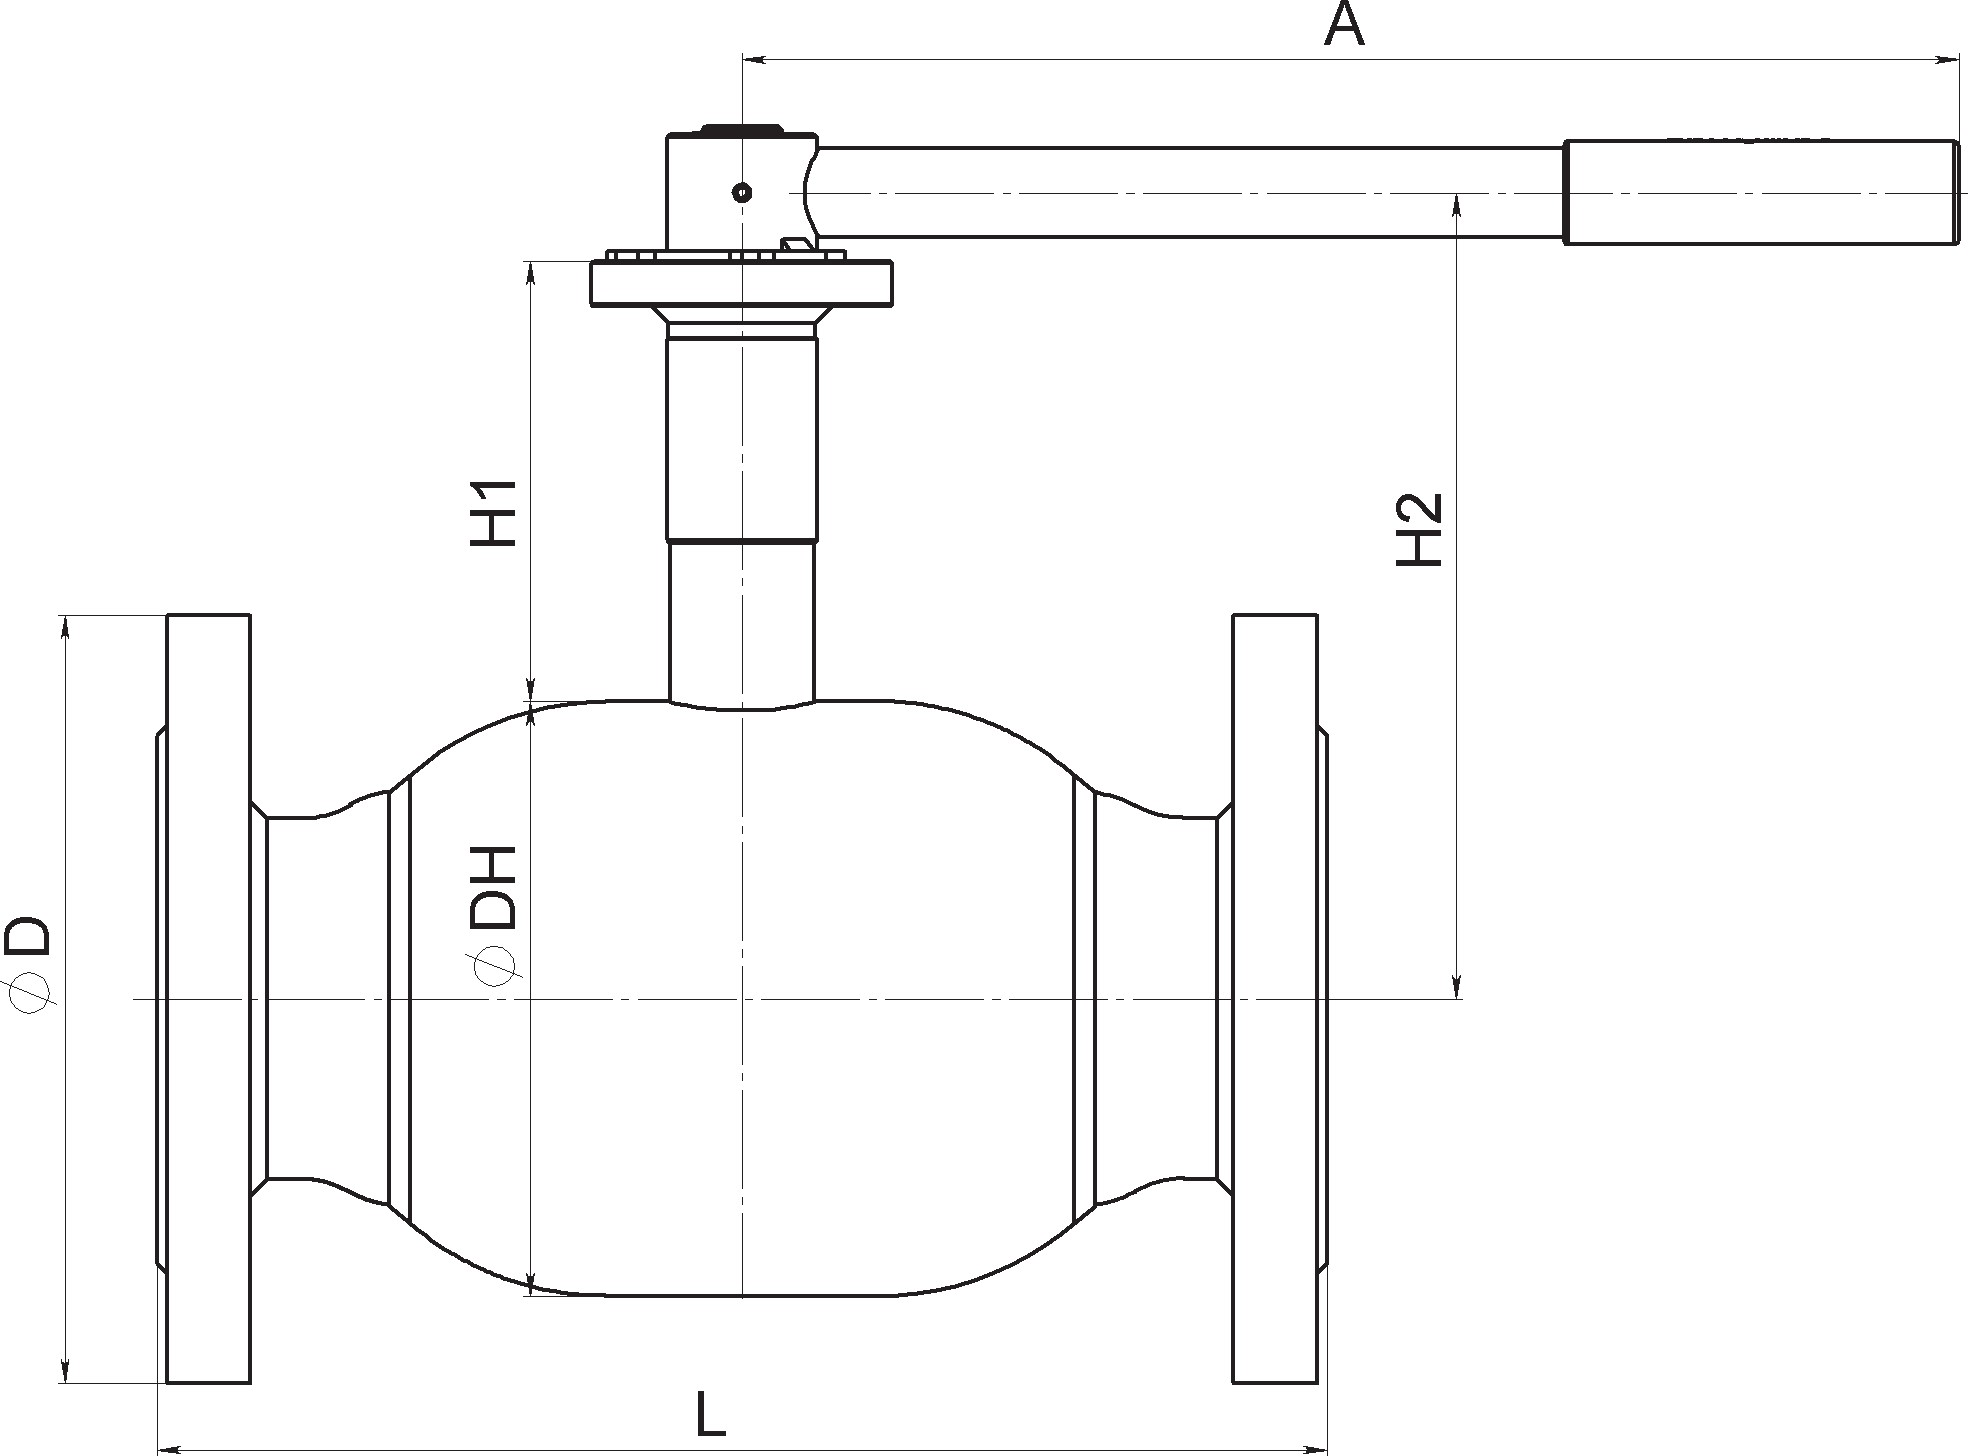 Кран шаровый Broen Ballomax-КШТ61.113А.16-25 Ду150 Ру25 полнопроходный с плавающим шаром, с ISO фланцем, корпус - сталь, уплотнение - EPDM, фланцевый, ручка-рычаг